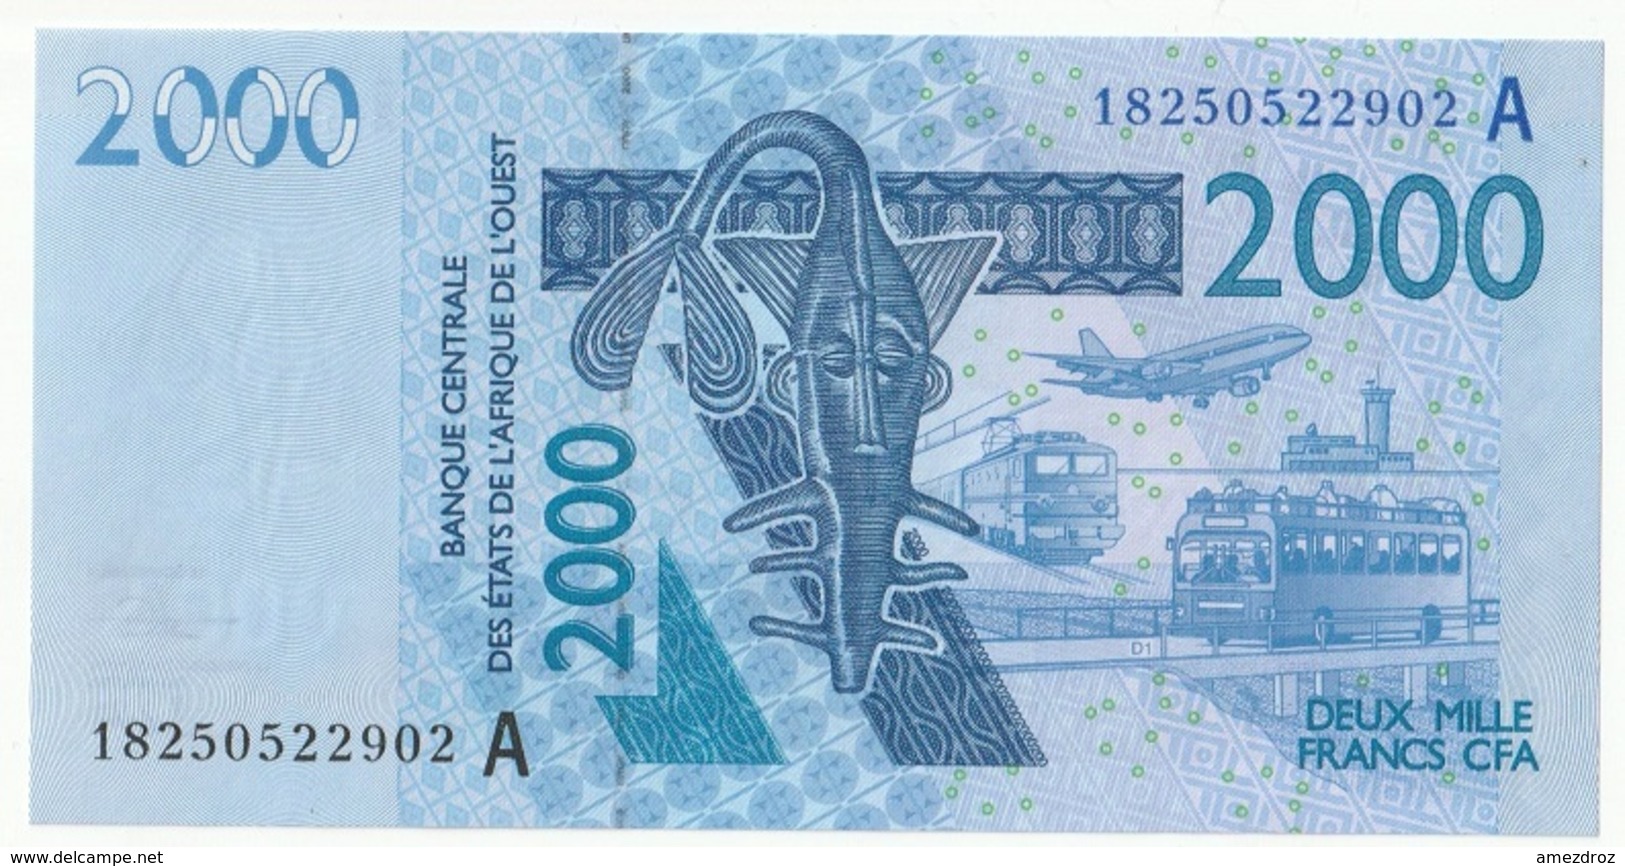 Billet De 2000 Francs CFA XOF Non Circulé Afrique De L'Ouest Origine Cote D'Ivoire - Ivoorkust